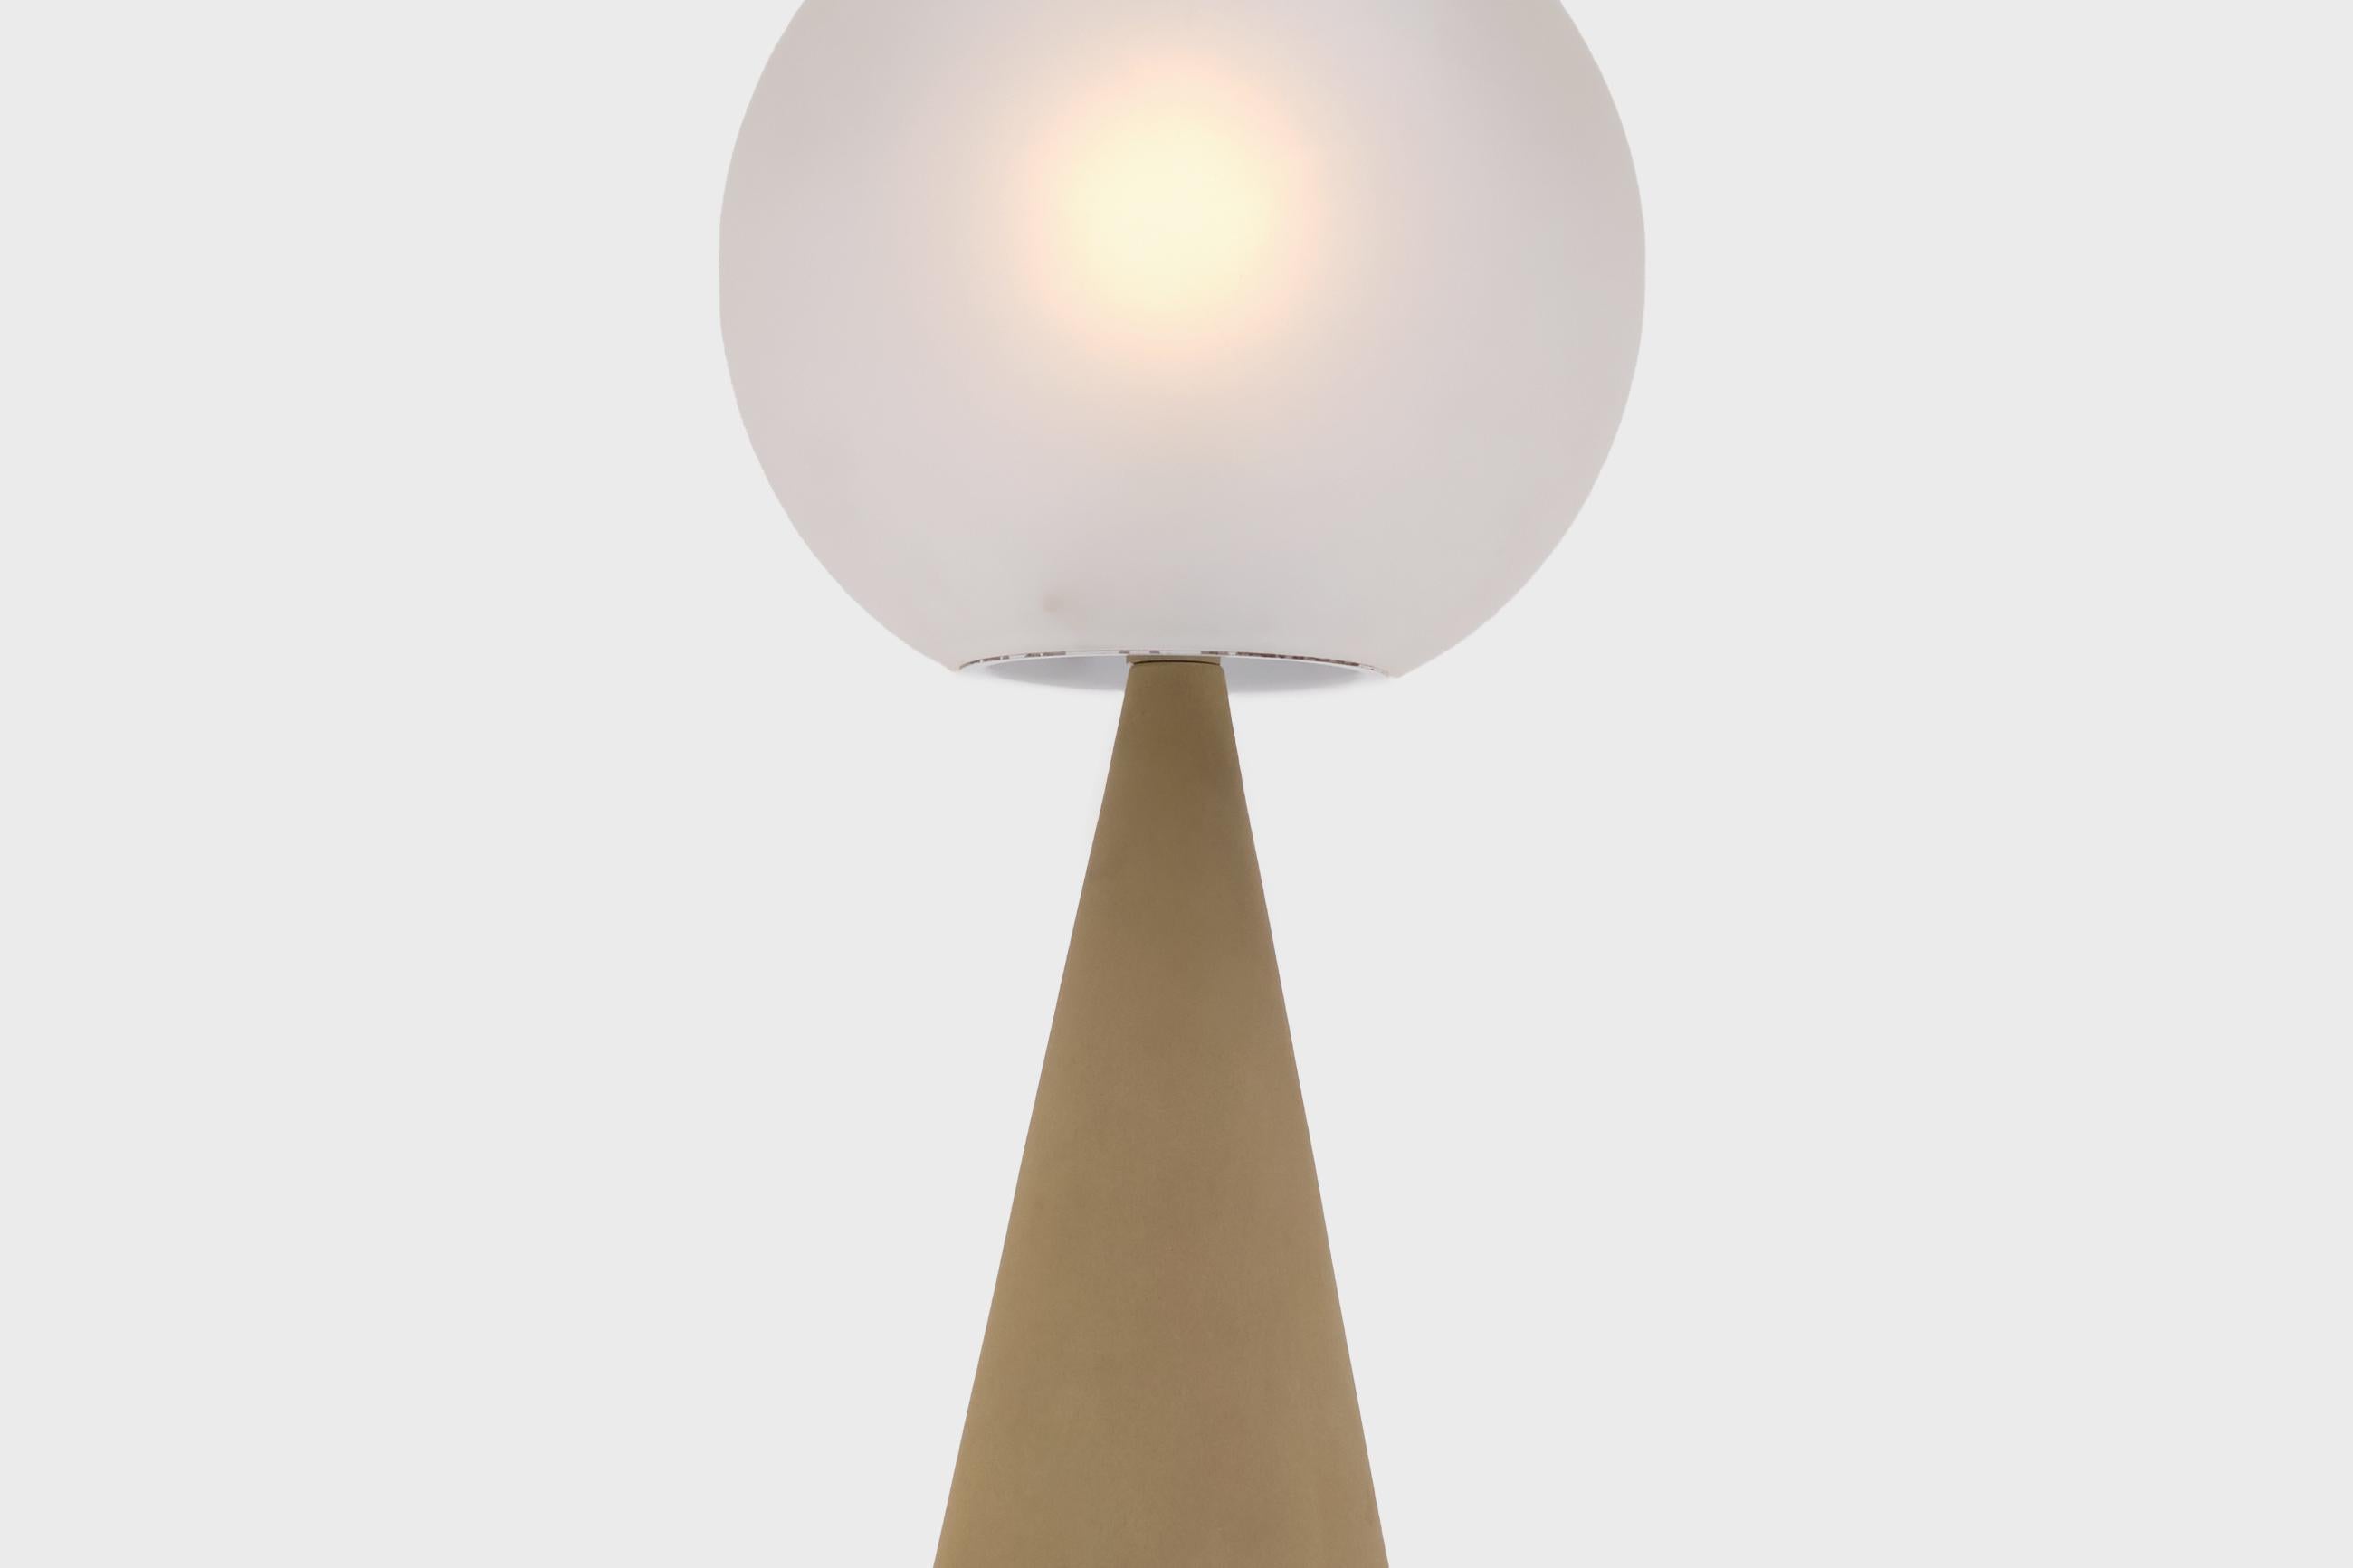 Rare lampe de table 'Bilia' mod. 2474 de Gio Ponti pour Fontana Arte, Italie, vers 1960. Le design sophistiqué se compose de deux formes primitives : un cône et une sphère. Le cône est en aluminium et est recouvert de la laque texturée mate